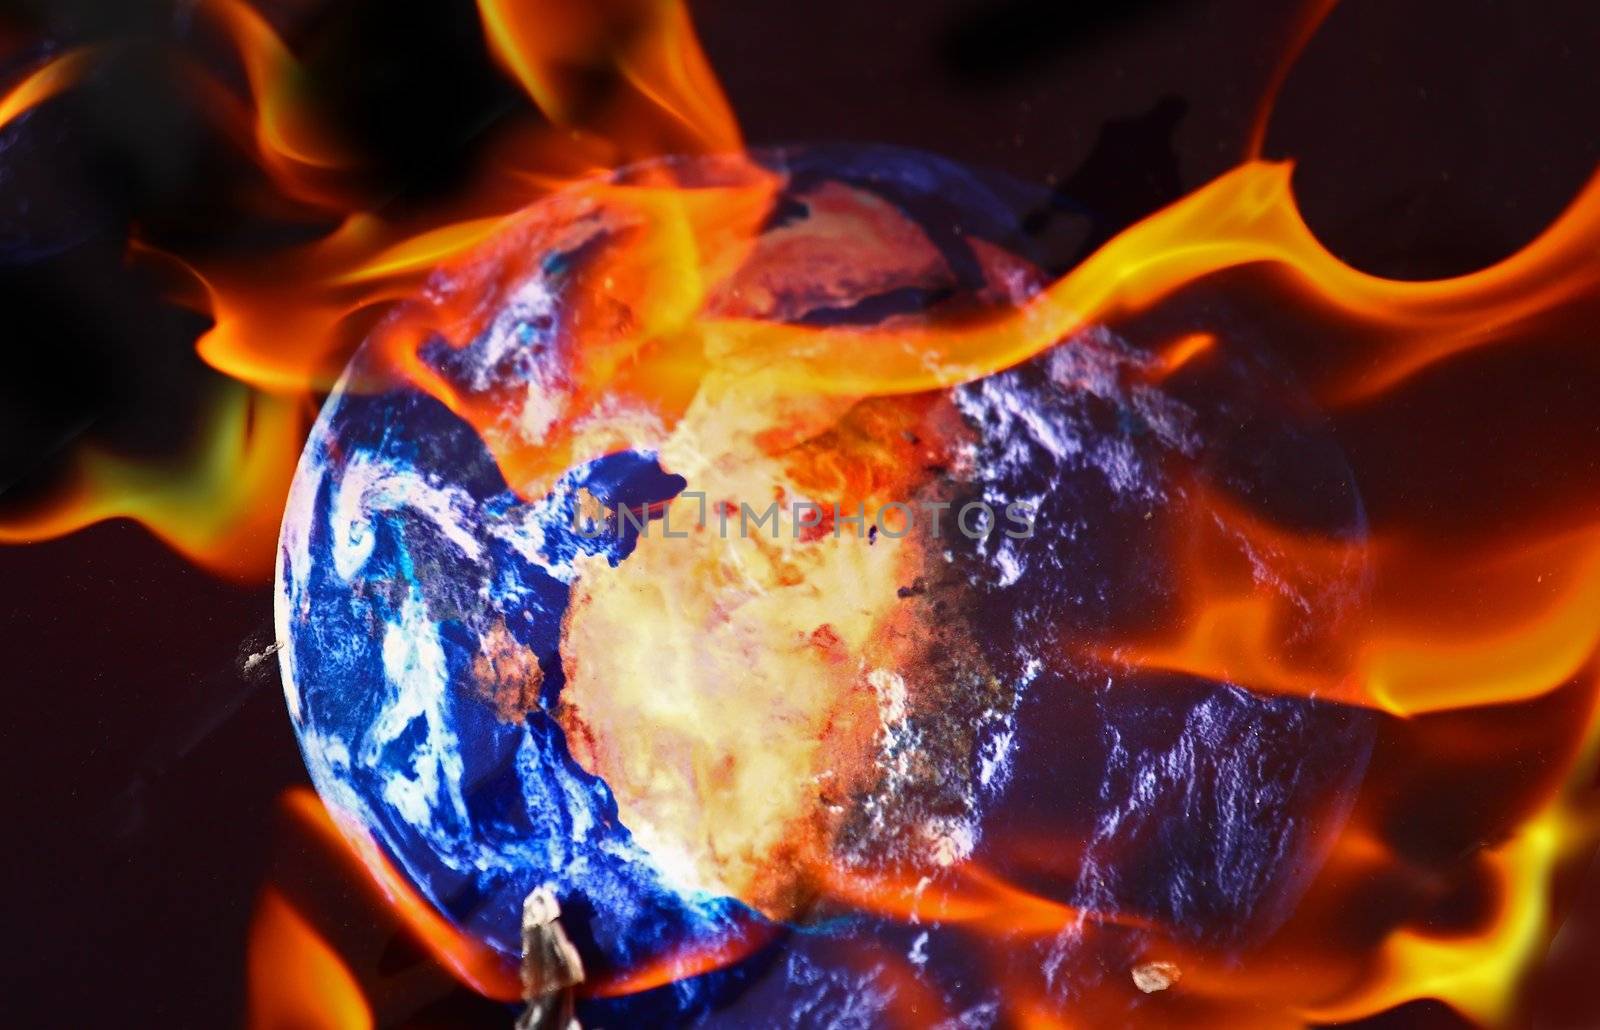 World on fire by Geoarts